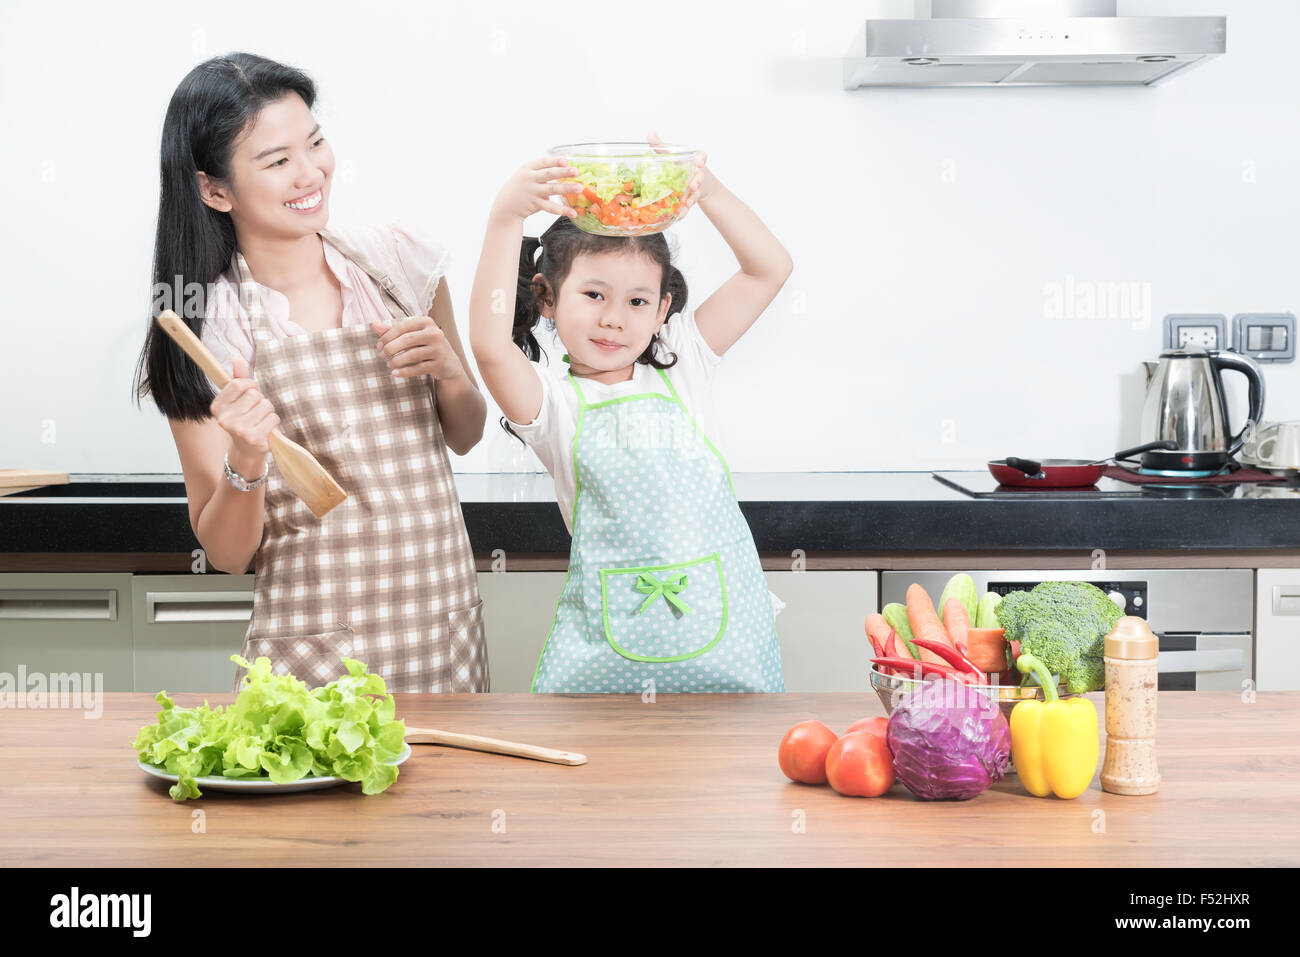 La famille, les enfants et les gens heureux concept - Mère et fille asiatique pour enfants dans la cuisine à la maison Banque D'Images